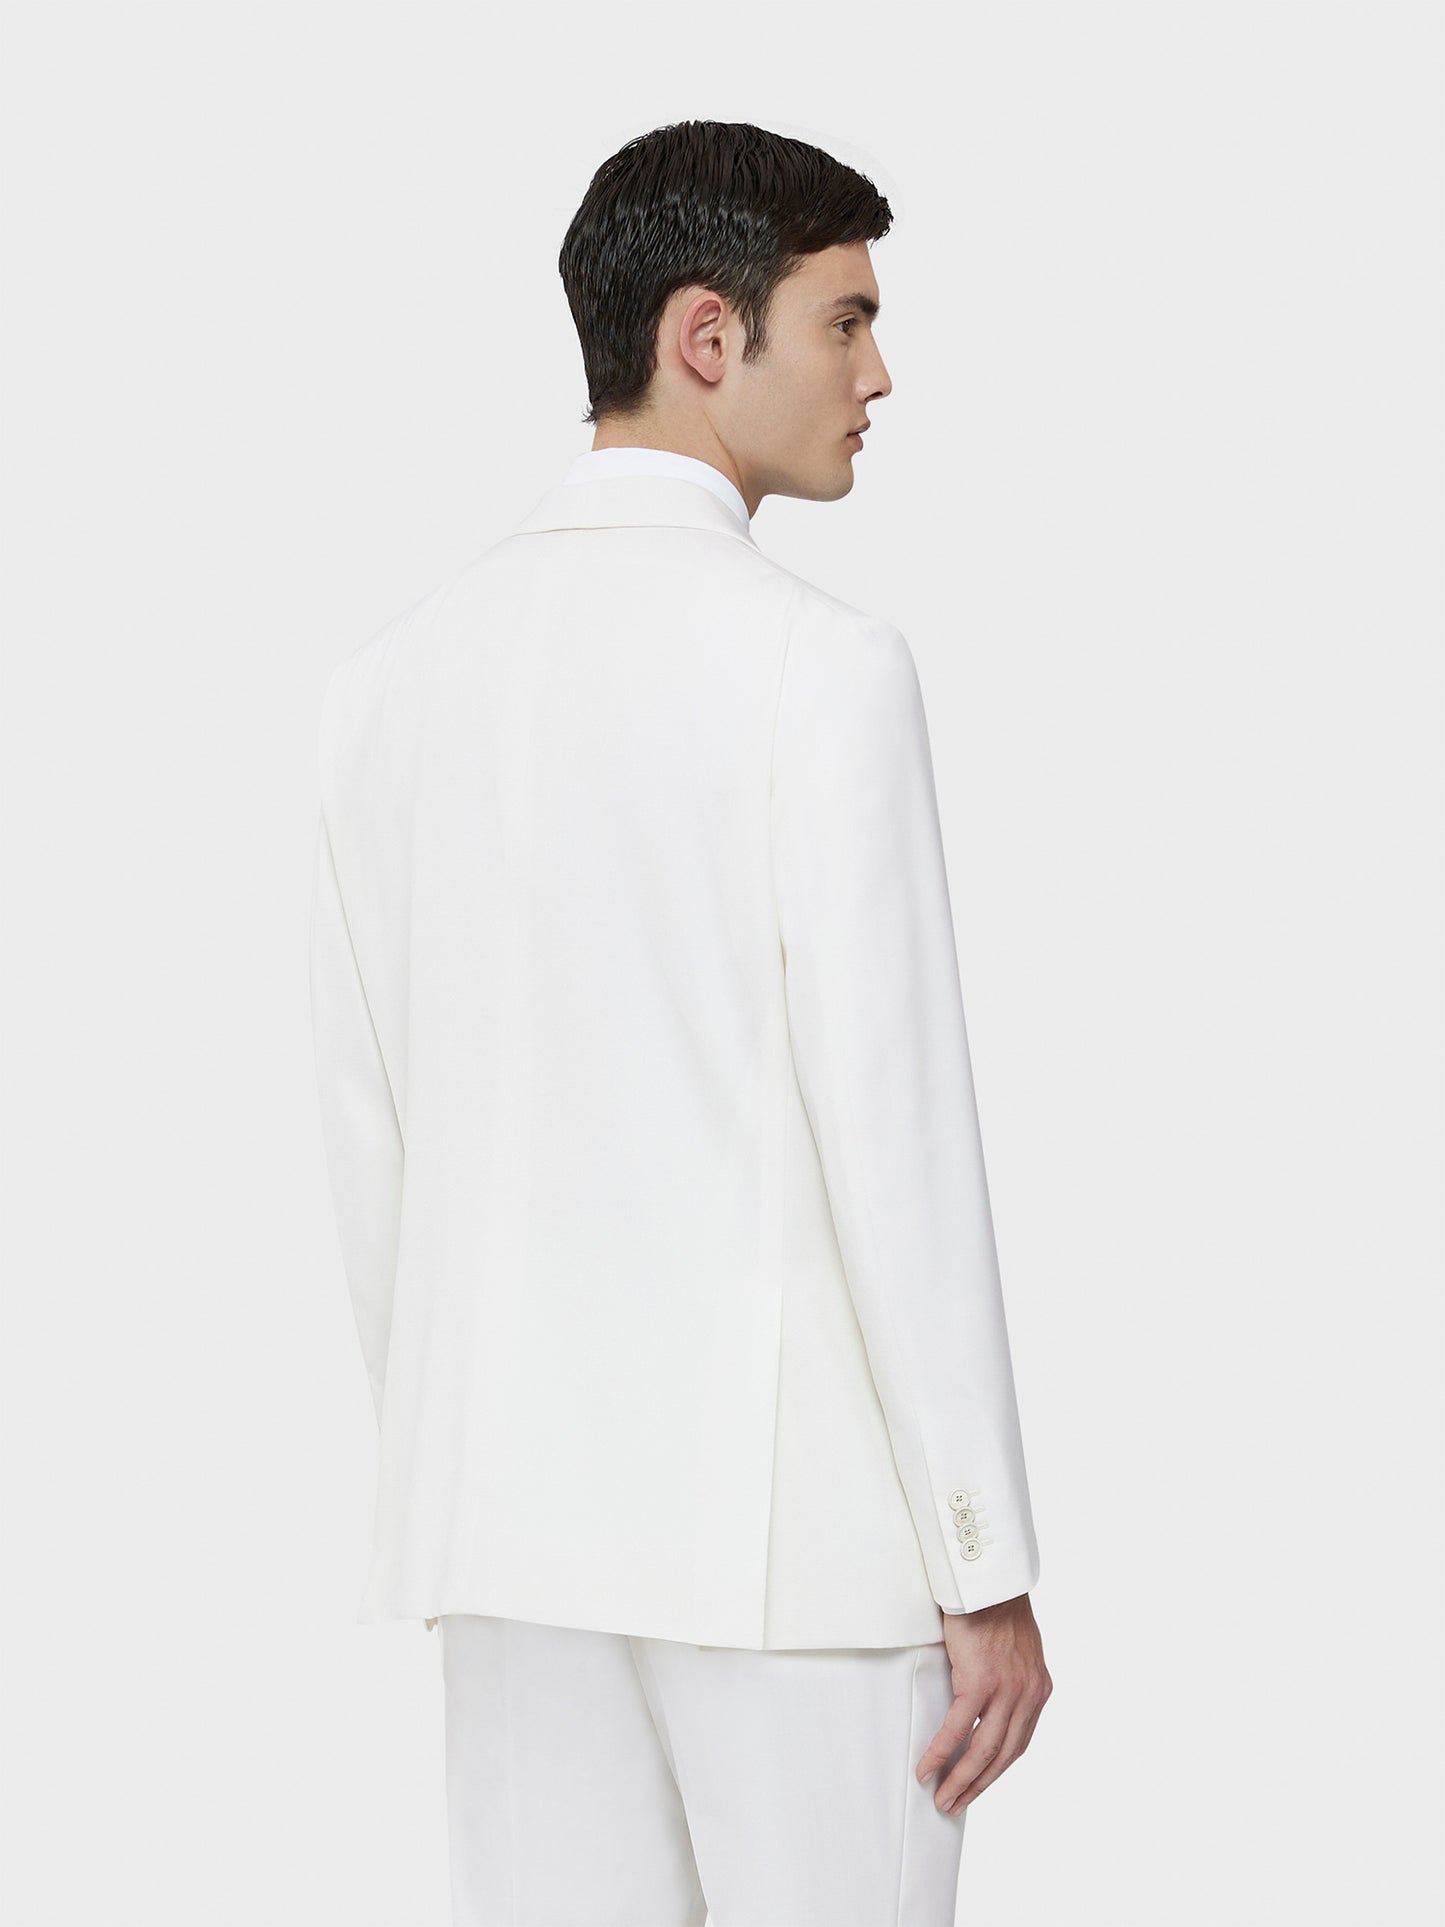 Caruso Menswear Abbigliamento Uomo Giacca Norma foderata in lana bianco drop 7R indossato back